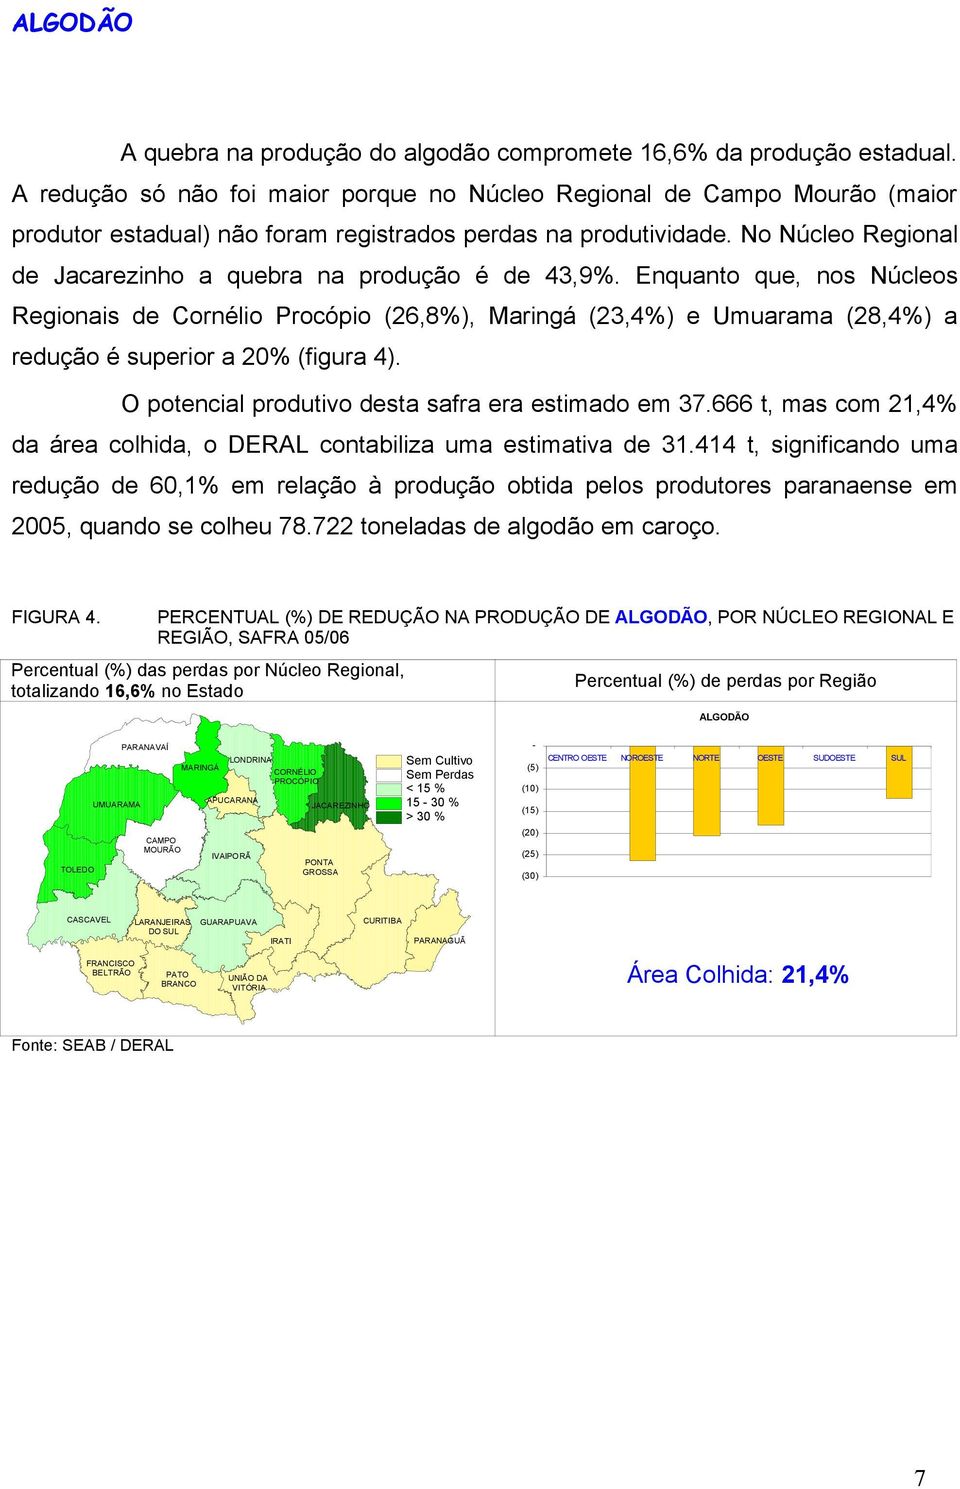 No Núcleo Regional de Jacarezinho a quebra na produção é de 43,9%.